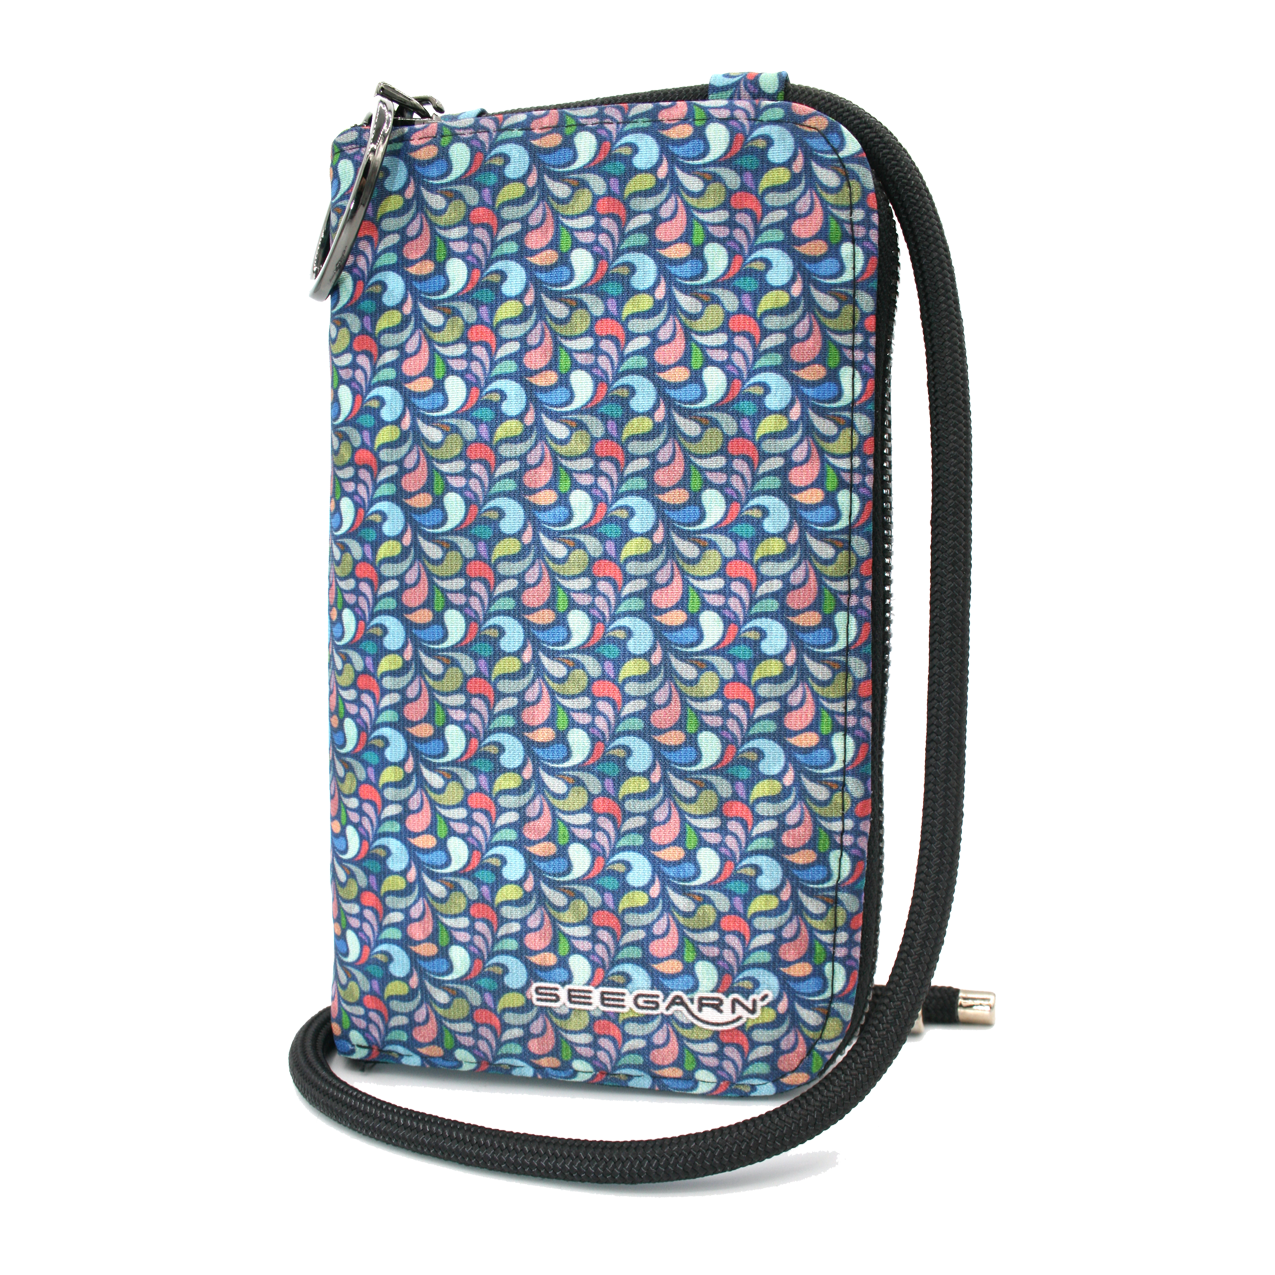 Smart-Bag, 2in1 Handy-Tasche und Geldbeutel (MB41)